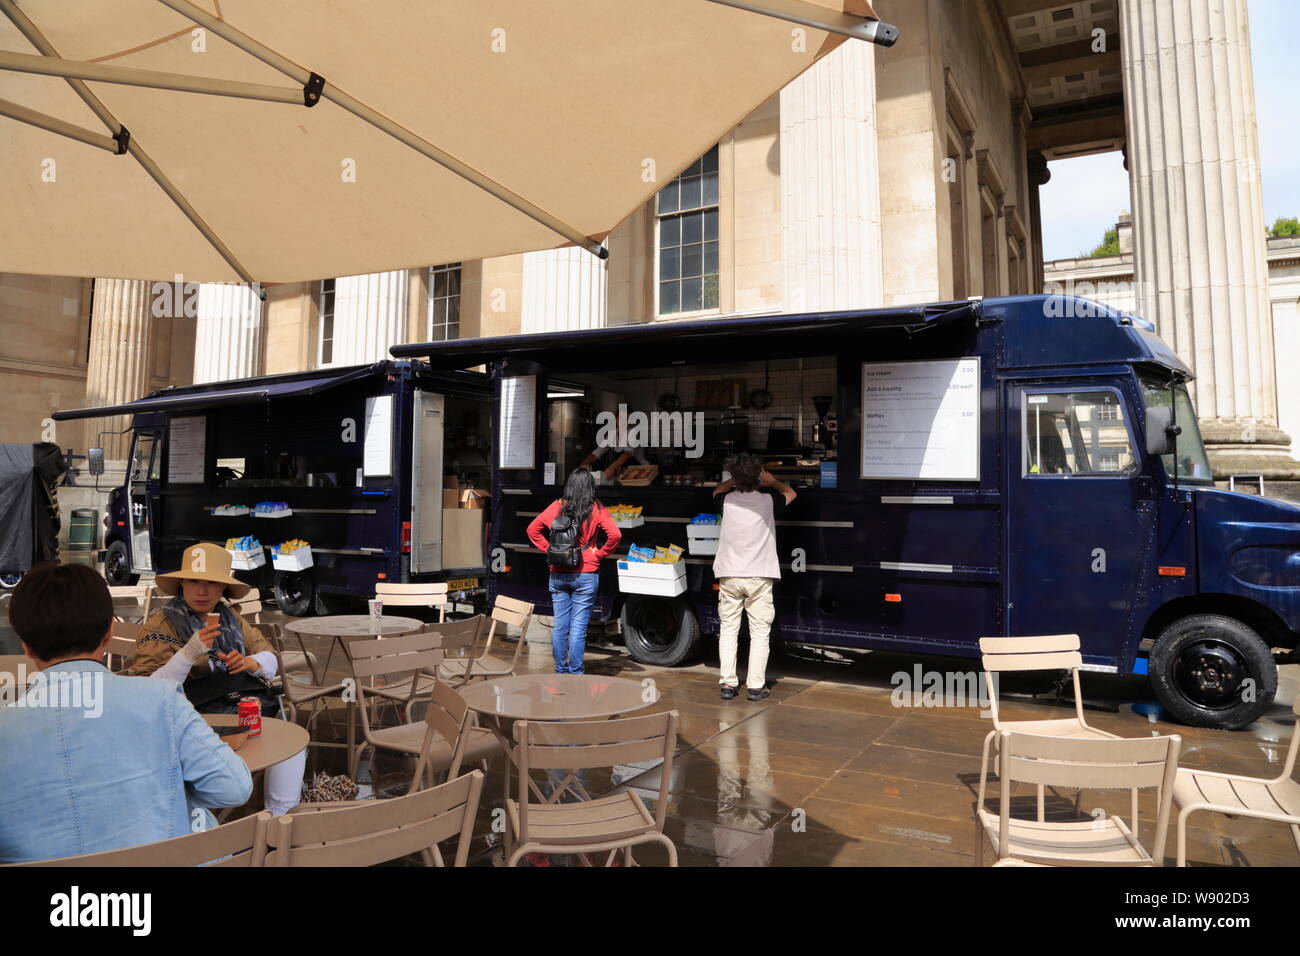 Persone sedersi sotto un ombrellone in una caffetteria all'aperto con area, mentre altri acquistare rinfreschi da un camion alimentari presso il British Museum di Londra, Regno Unito. Foto Stock